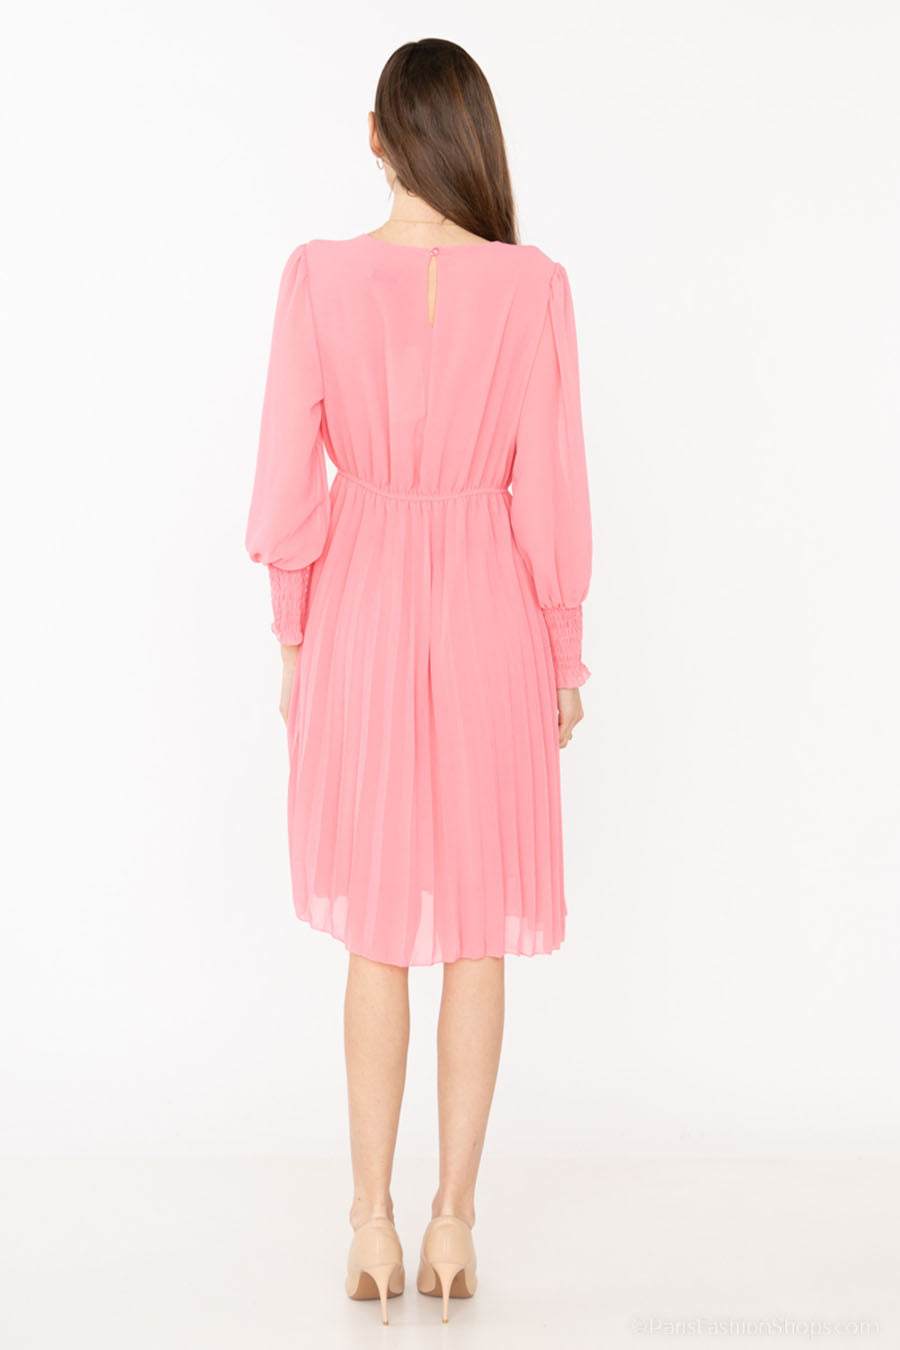 Γυναικείο φόρεμα Jakline, Ροζ 4